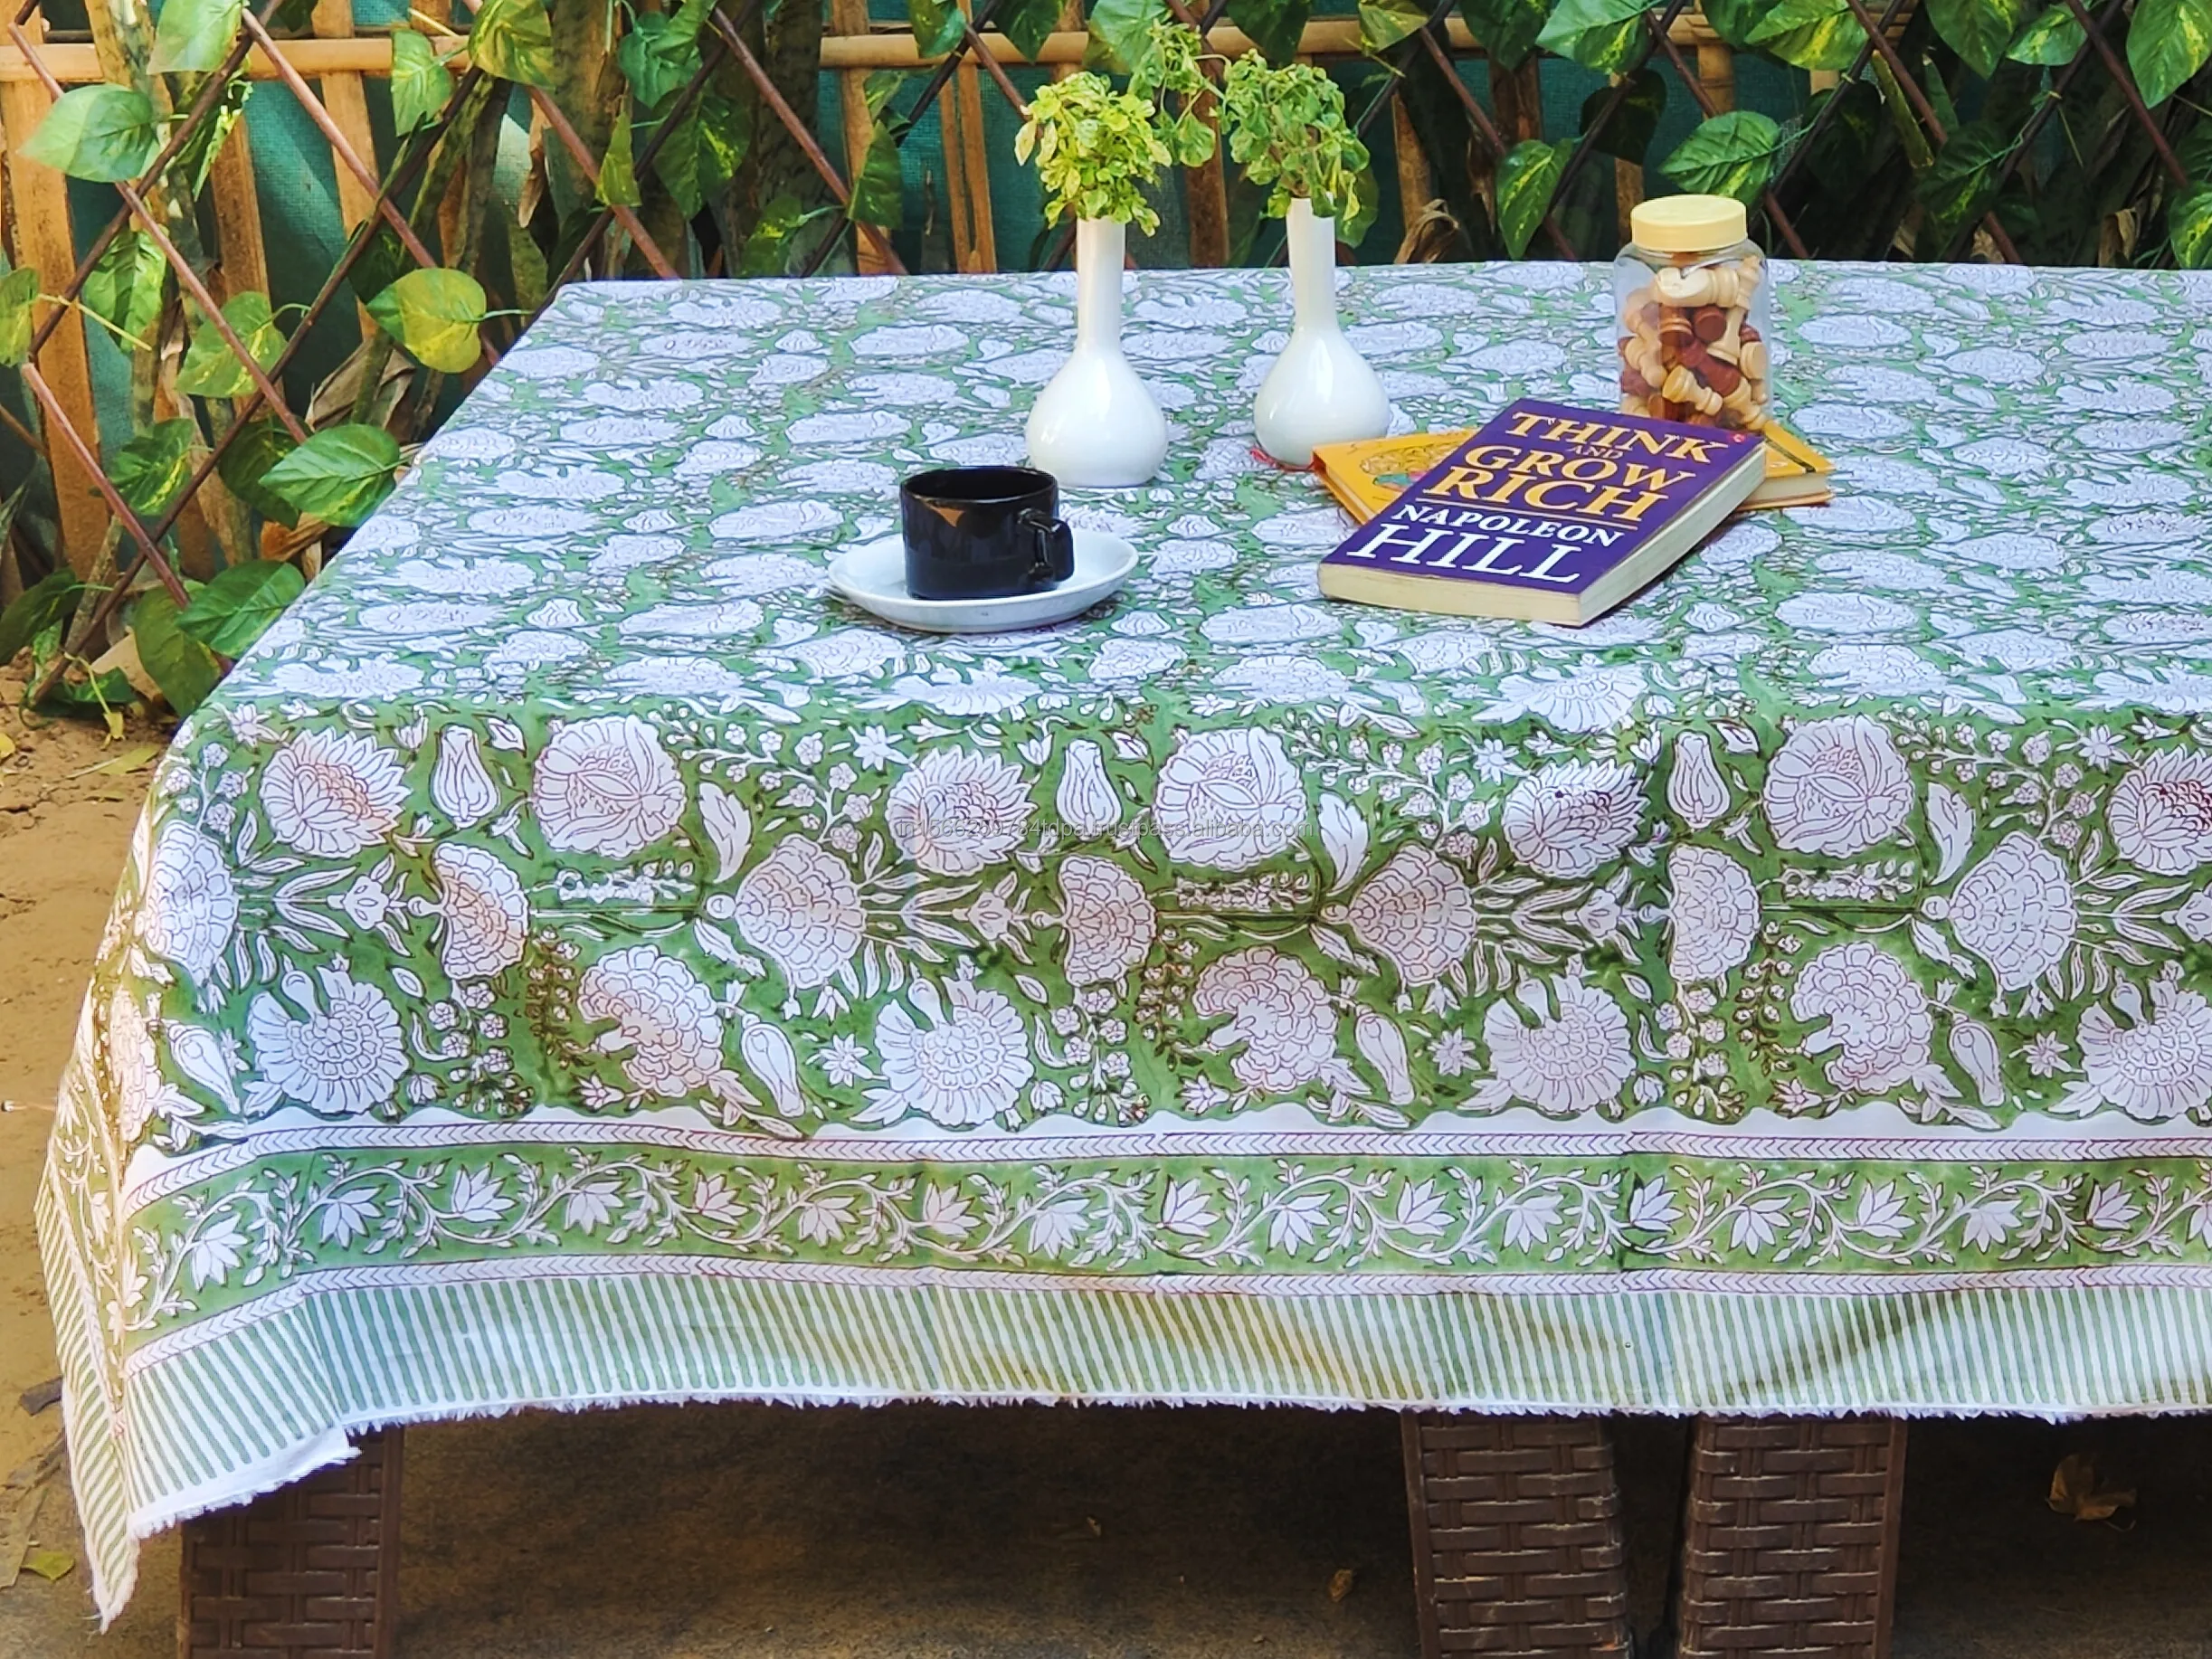 Çiçek yaprak baskılı pamuk masa örtüleri adaçayı yeşil hint el bloğu baskılı pamuk masa örtüsü çiftlik evi tabakalanmalar